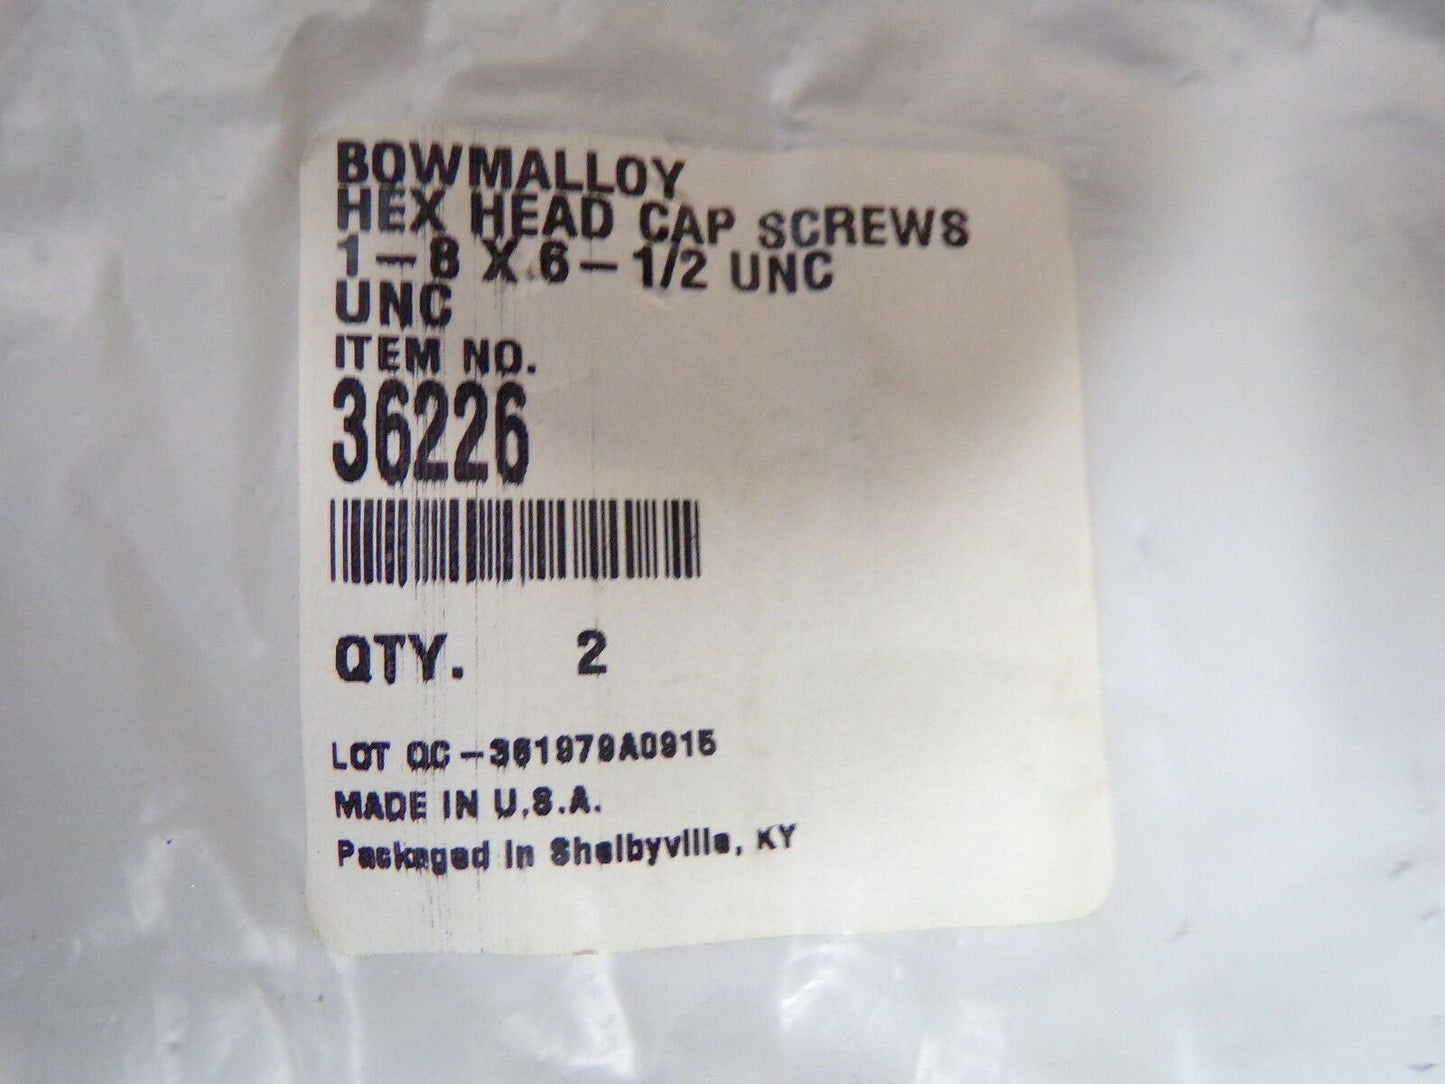 Bowmalloy Hex Head Cap Screws 1"-8 X 6-1/2" UNC PK-2 36226 (183270726730-2F24)